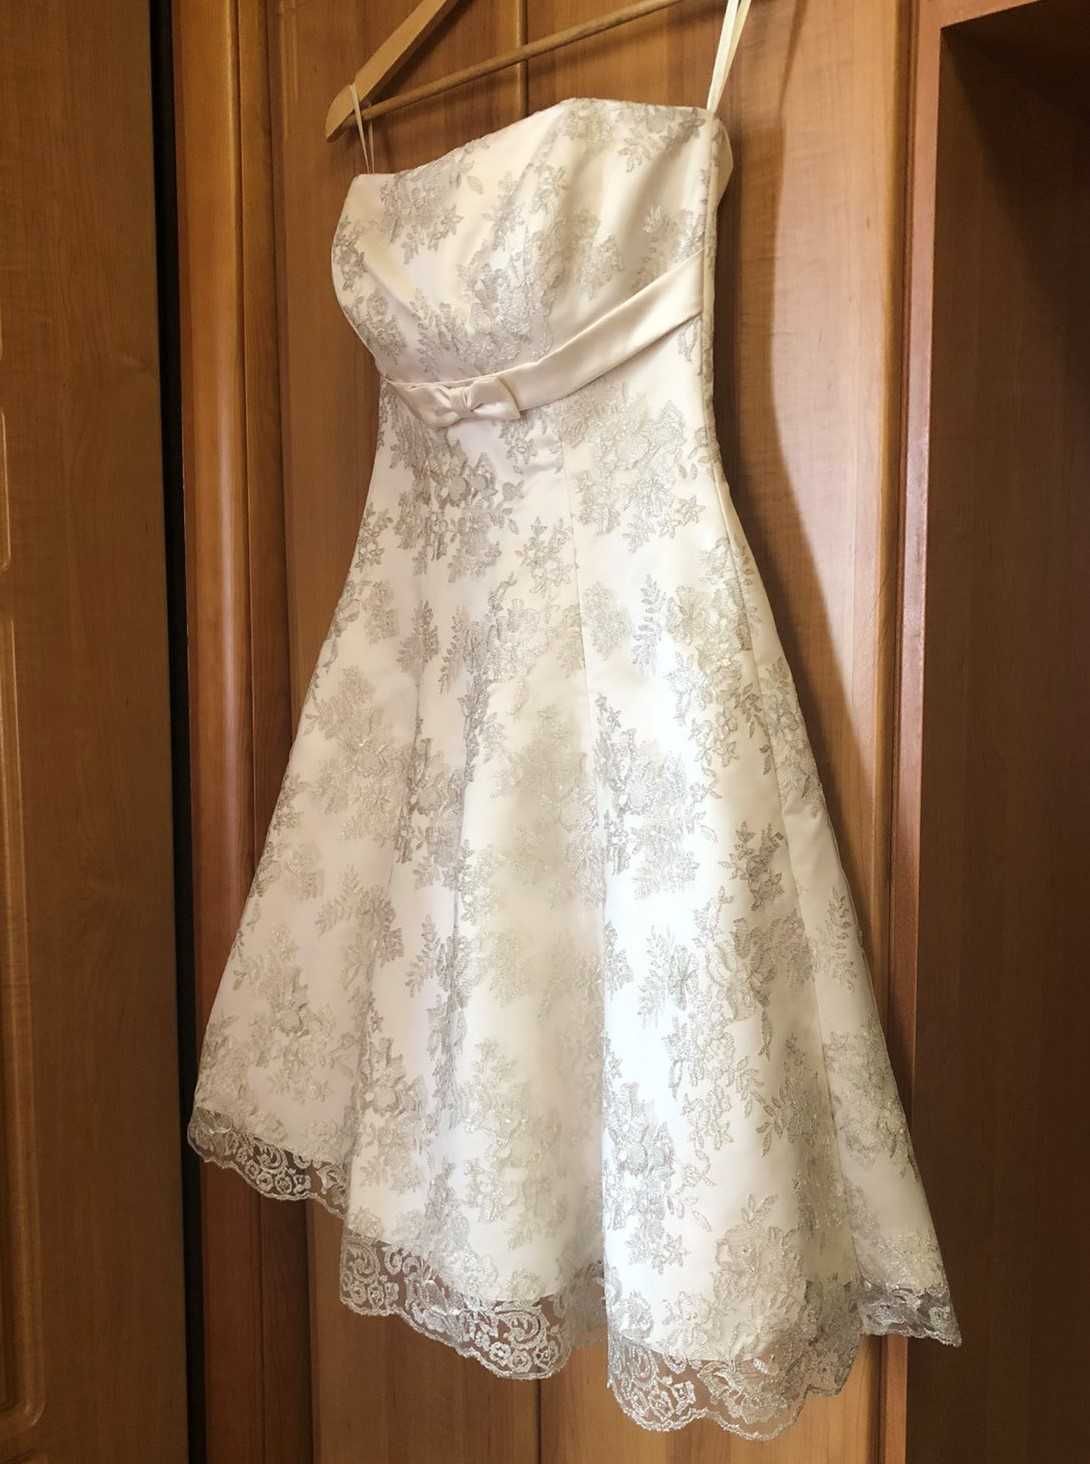 Випускна, весільна, вечірня сукня. Розмір М, колір Ivory.